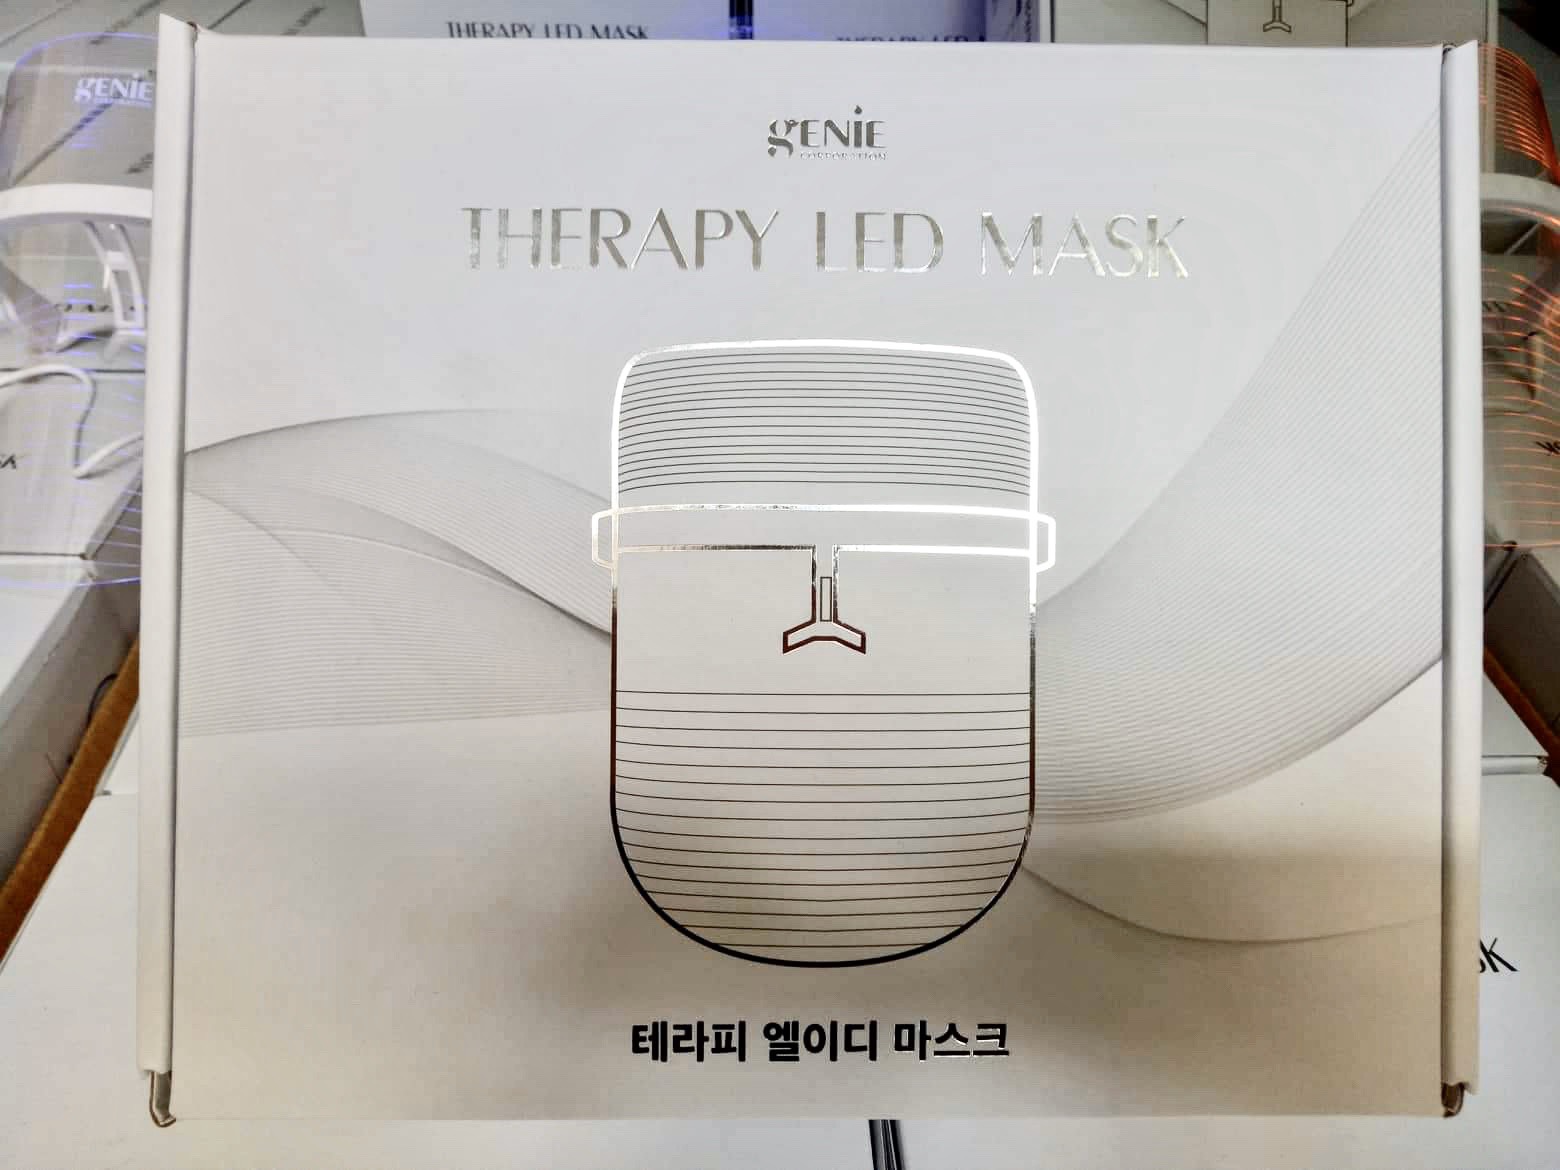 Hướng dẫn sử dụng mặt nạ ánh sáng therapy led mask